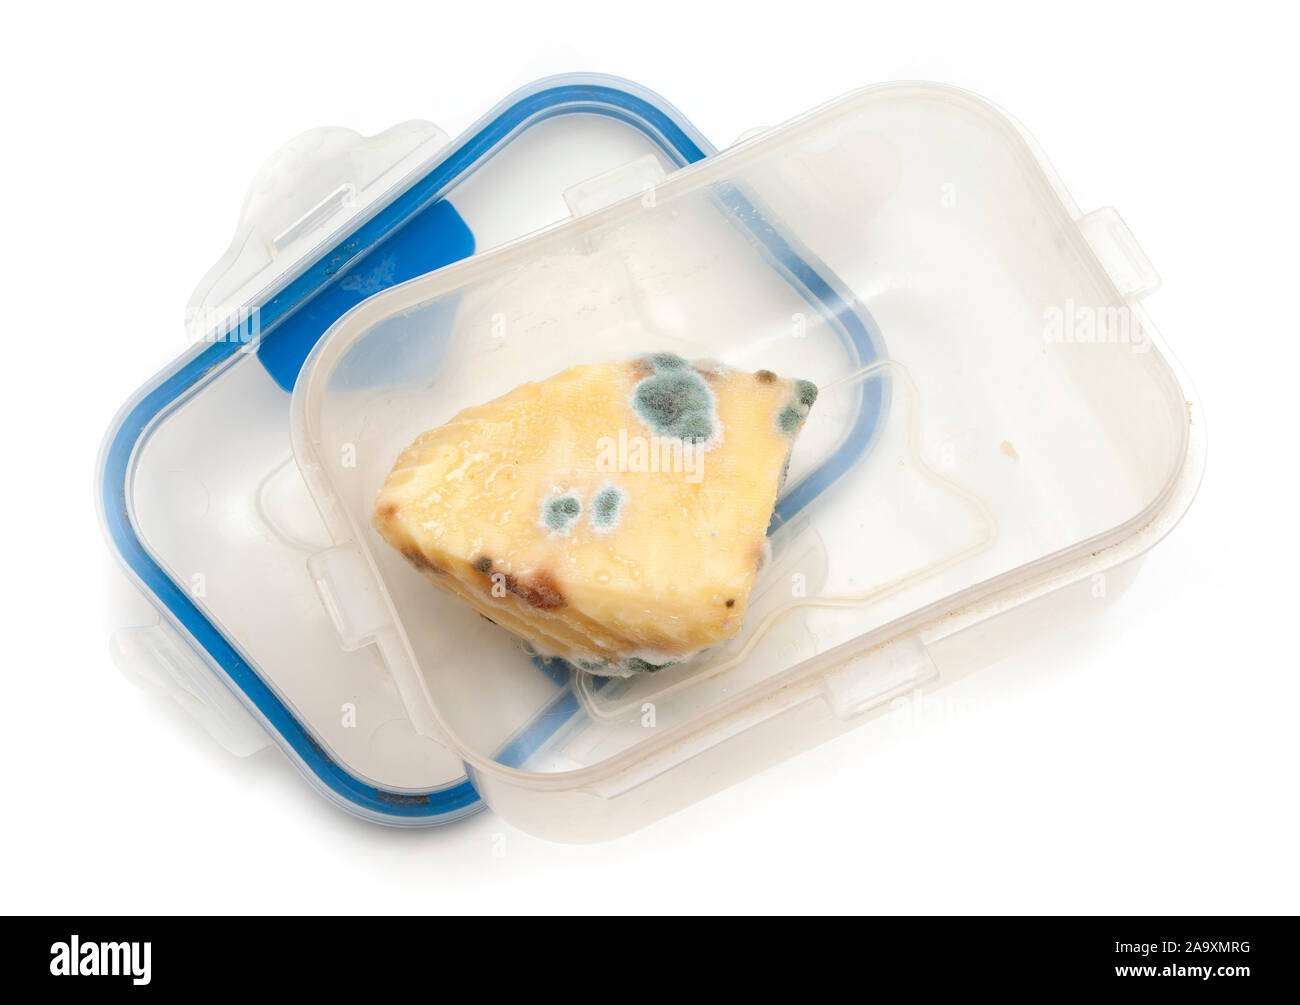 Un trozo de queso mohoso en una caja de plástico verde, mostrando el crecimiento de hongos. Foto de stock